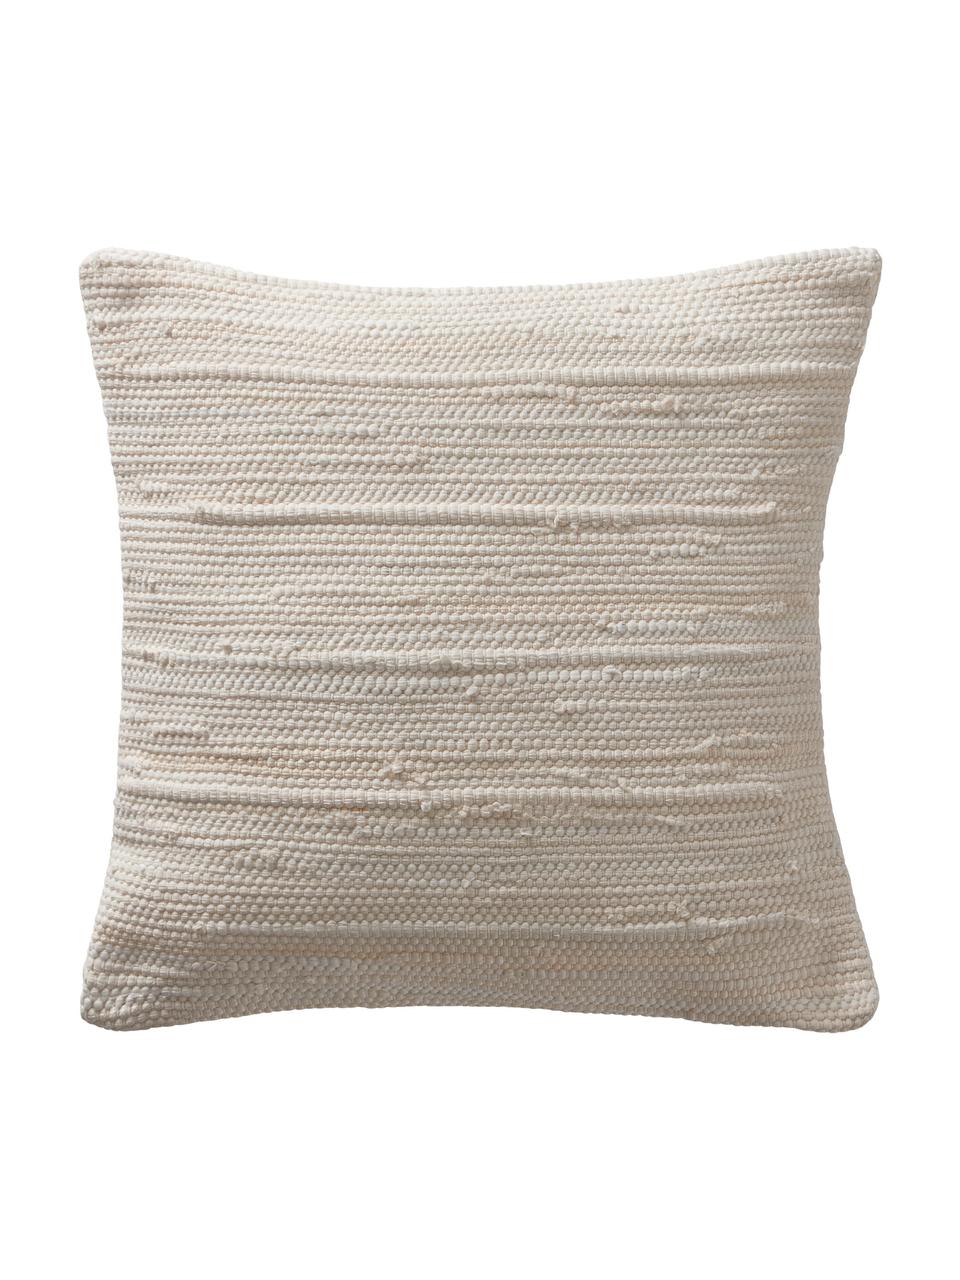 Kissenhülle Elvira mit strukturierter Oberfläche, 90% recycelte Baumwolle, 10% Baumwolle, Cremefarben, B 50 x L 50 cm